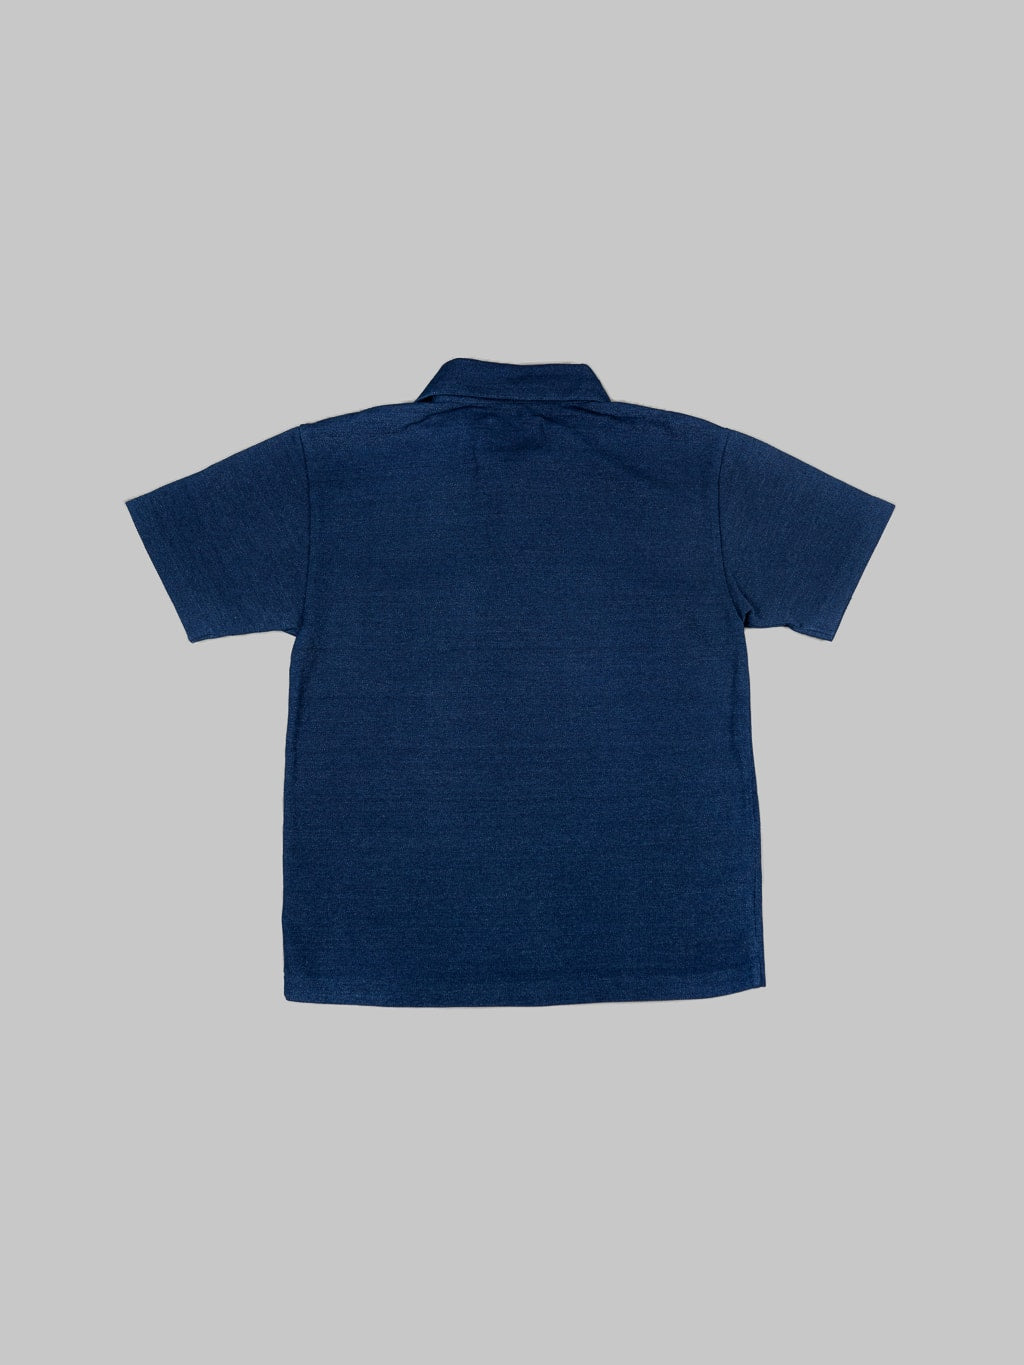 studio dartisan indigo dyed pique polo shirt  back